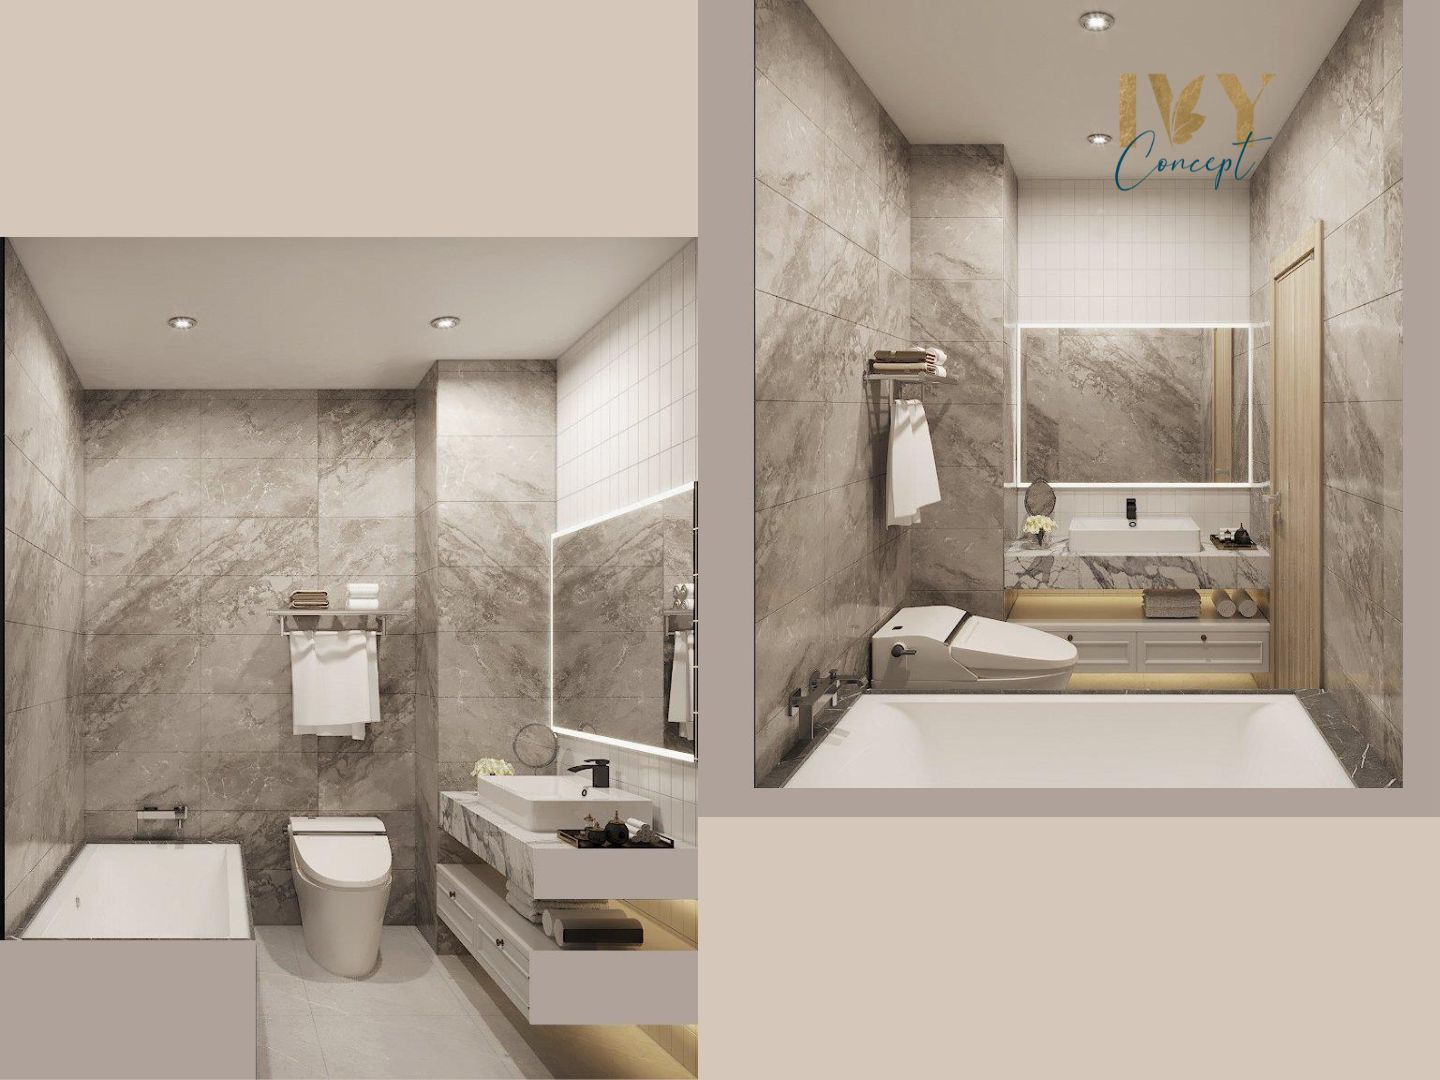 Phòng tắm, nhà vệ sinh, phong cách Hiện đại Modern, thiết kế concept nội thất, căn hộ The CBD Premium Home